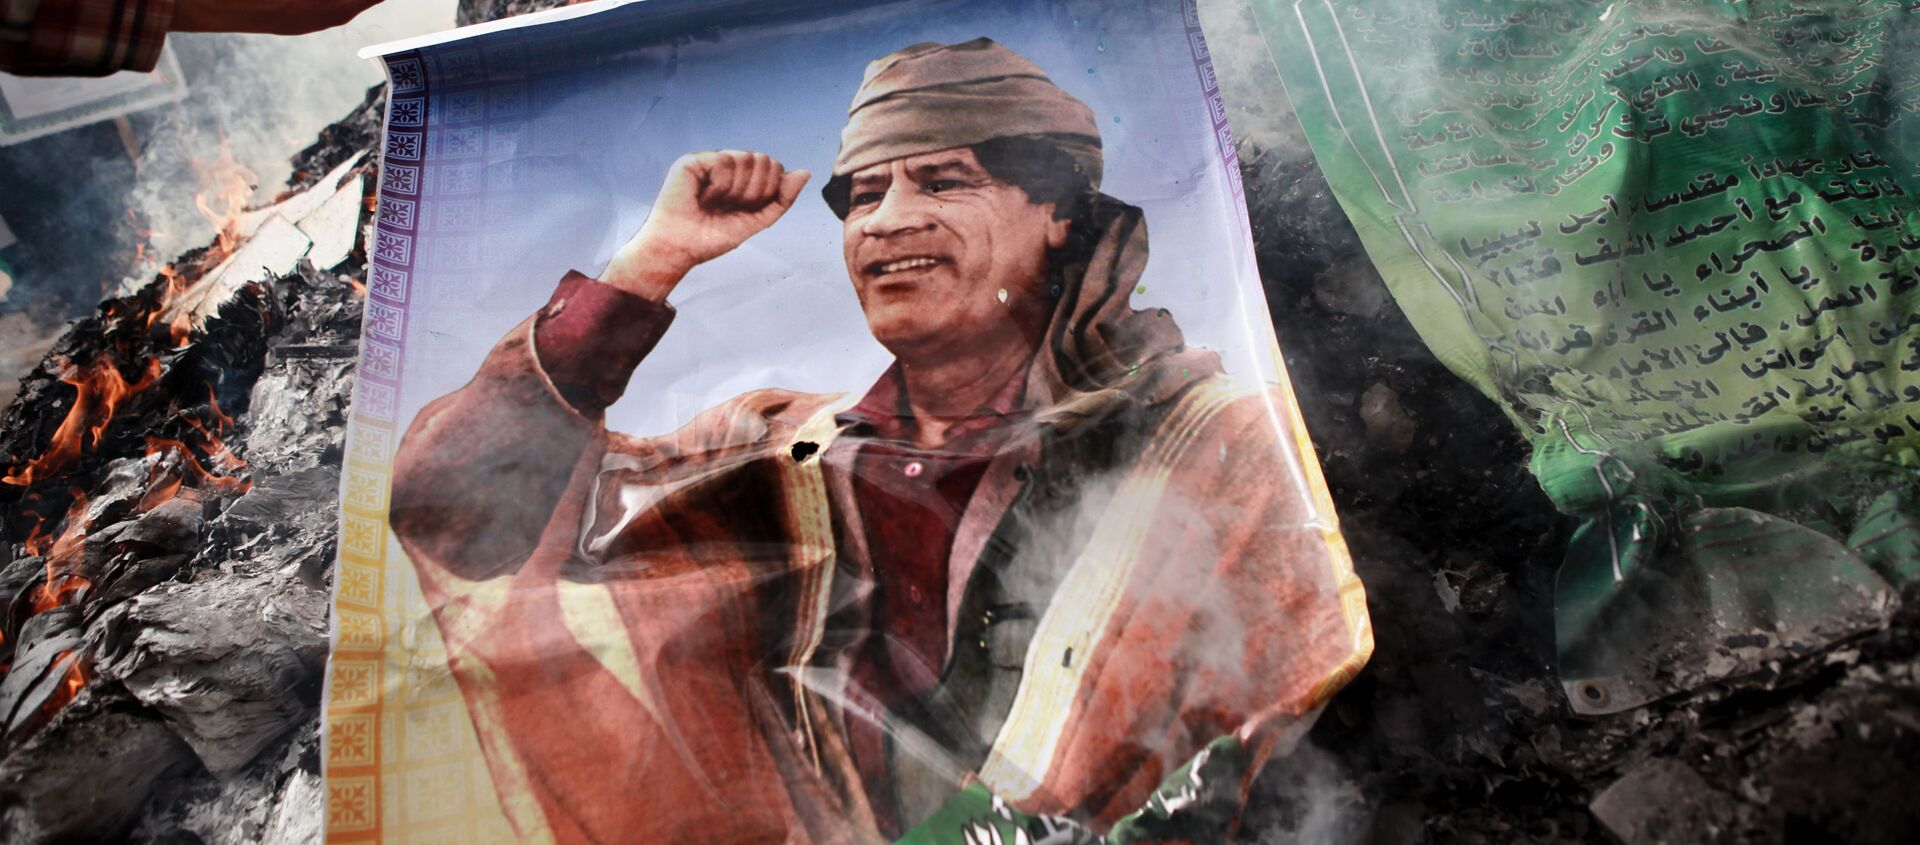 Moradores de Benghazi queimam retrato de Kadhafi, cartazes com citações dele e seu Livro Verde - Sputnik Brasil, 1920, 06.08.2019